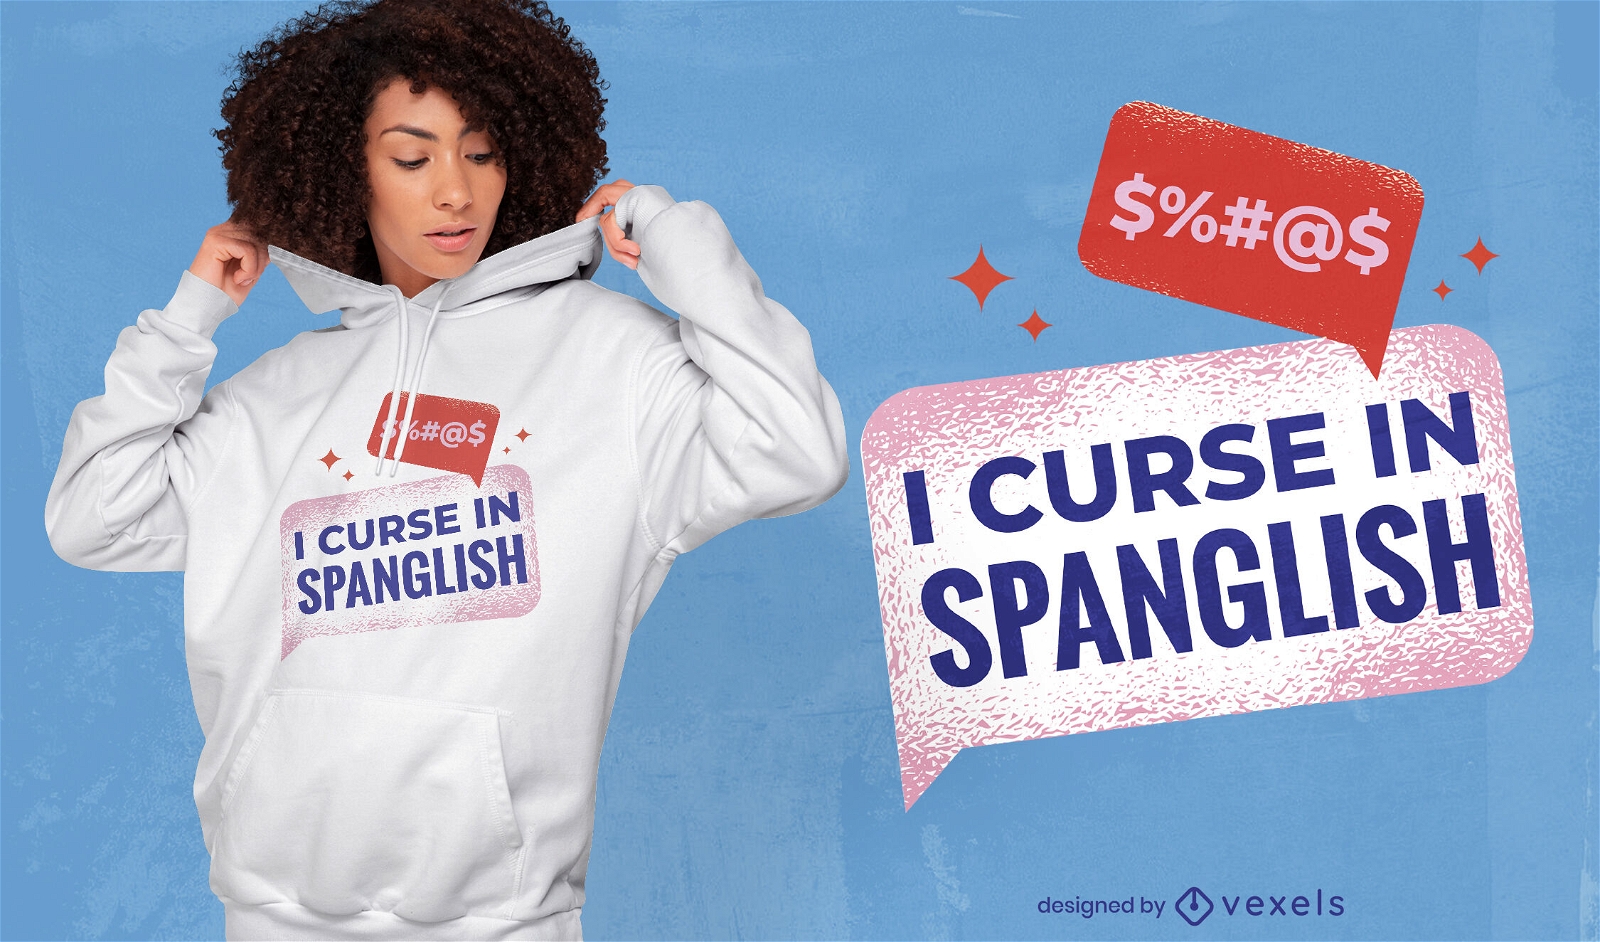 Englisches und spanisches lustiges T-Shirt-Design